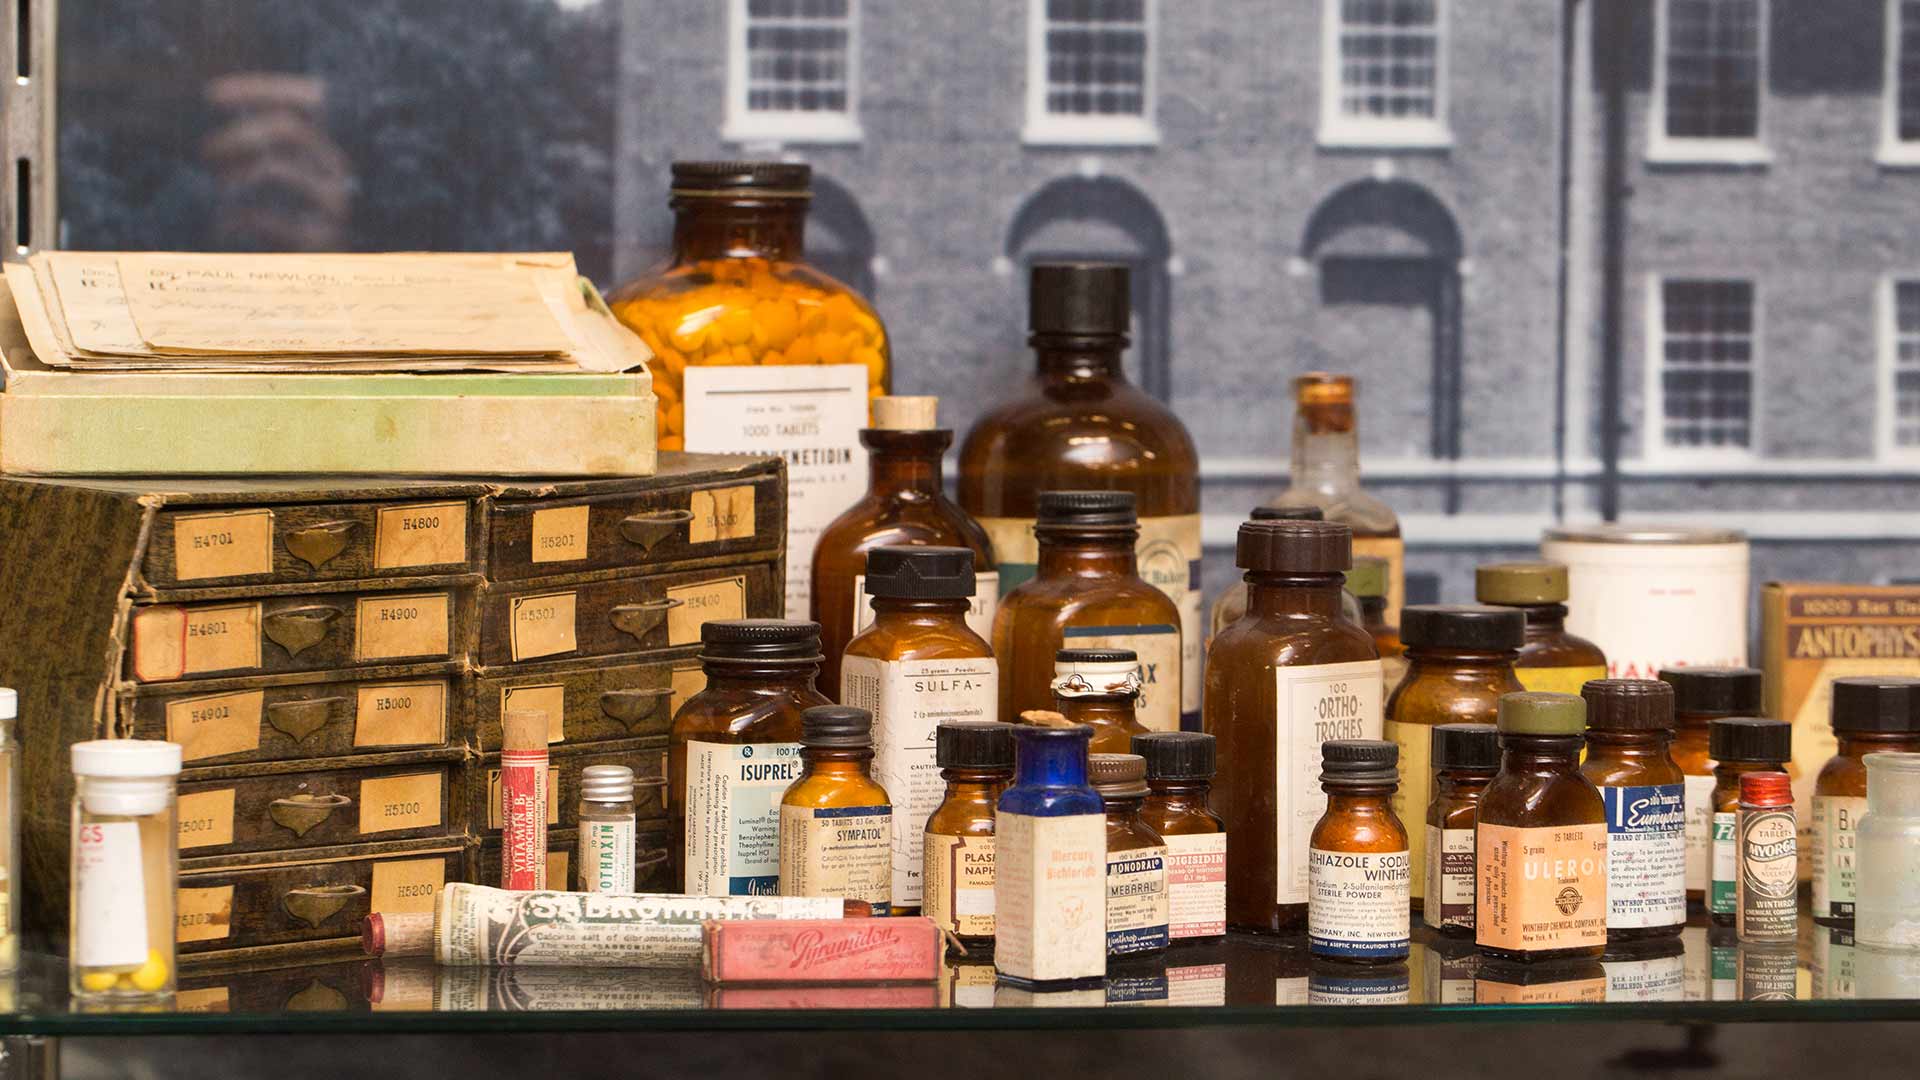 display of antique medicine bottles